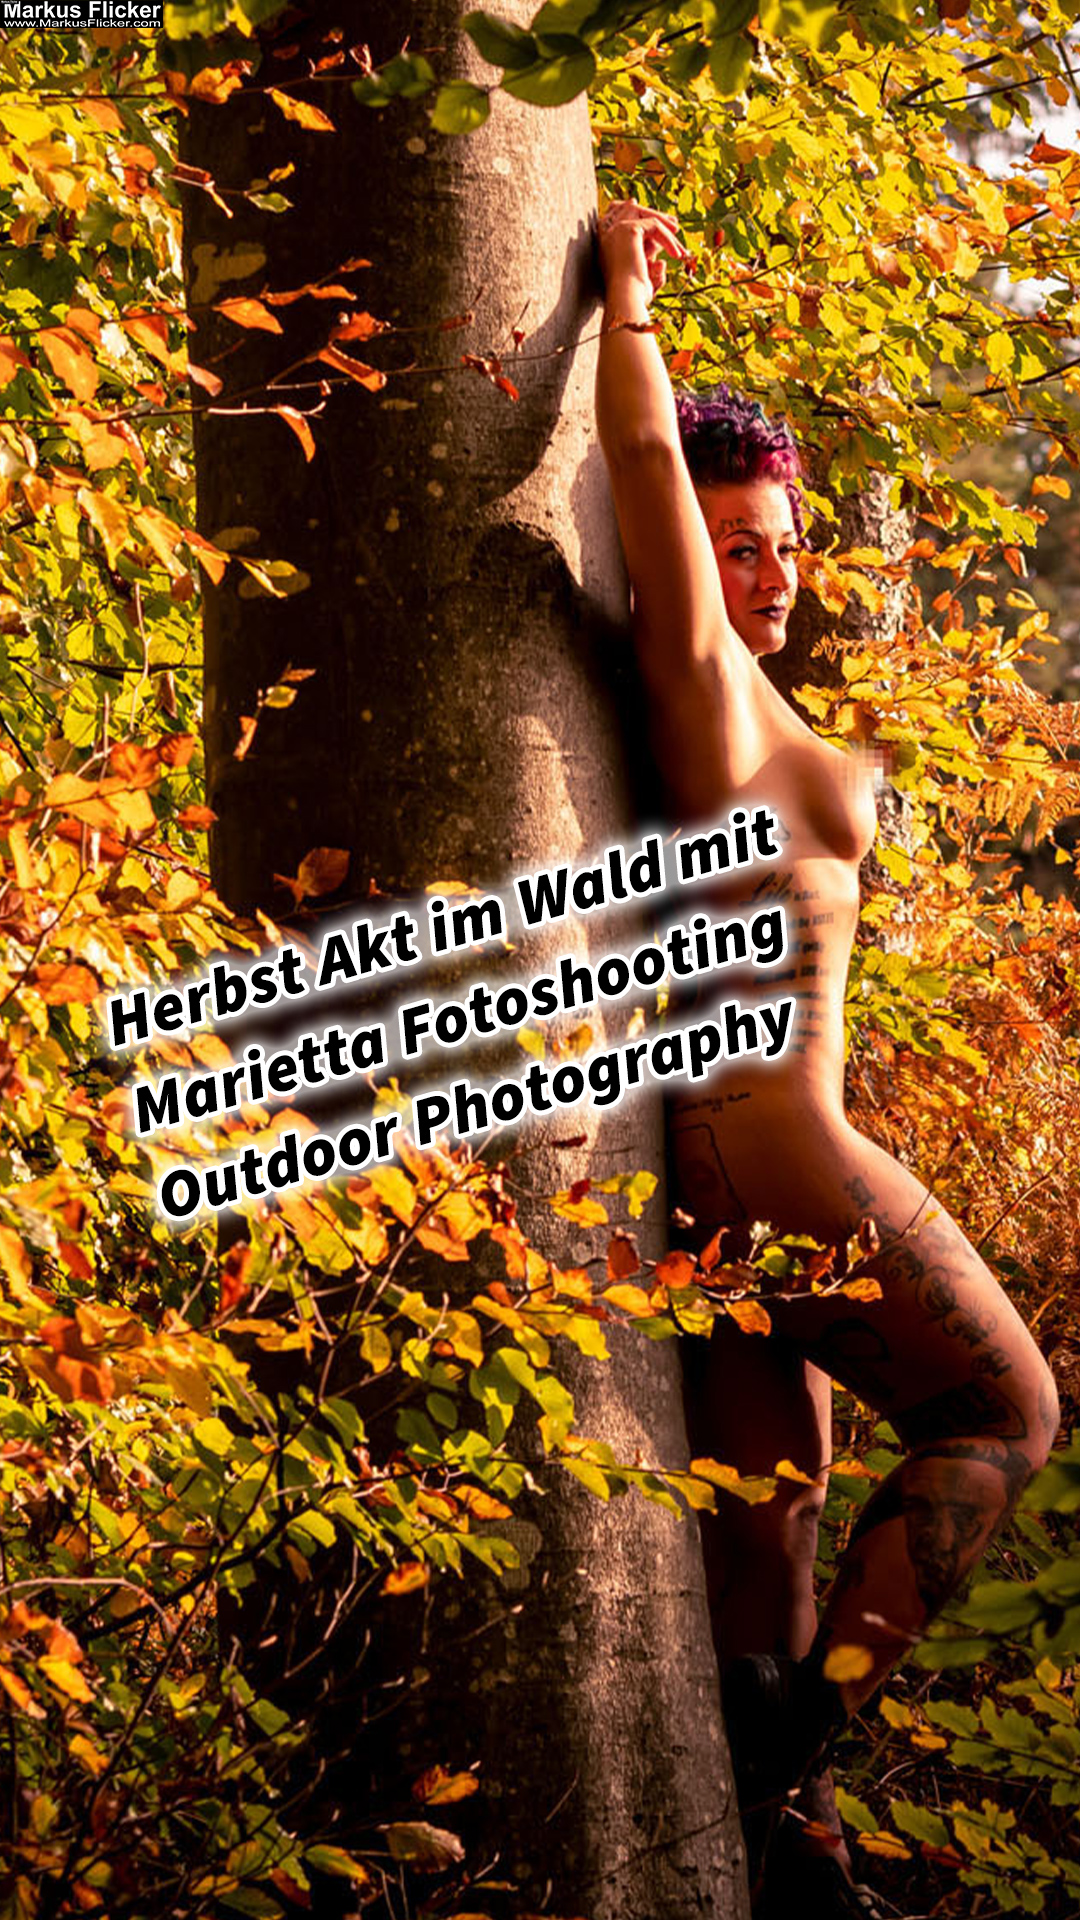 Herbst Akt im Wald mit Marietta Fotoshooting Outdoor Photography. Erotische Fotografie in der Natur. Frauenkörper in herbstlicher Waldstimmung.